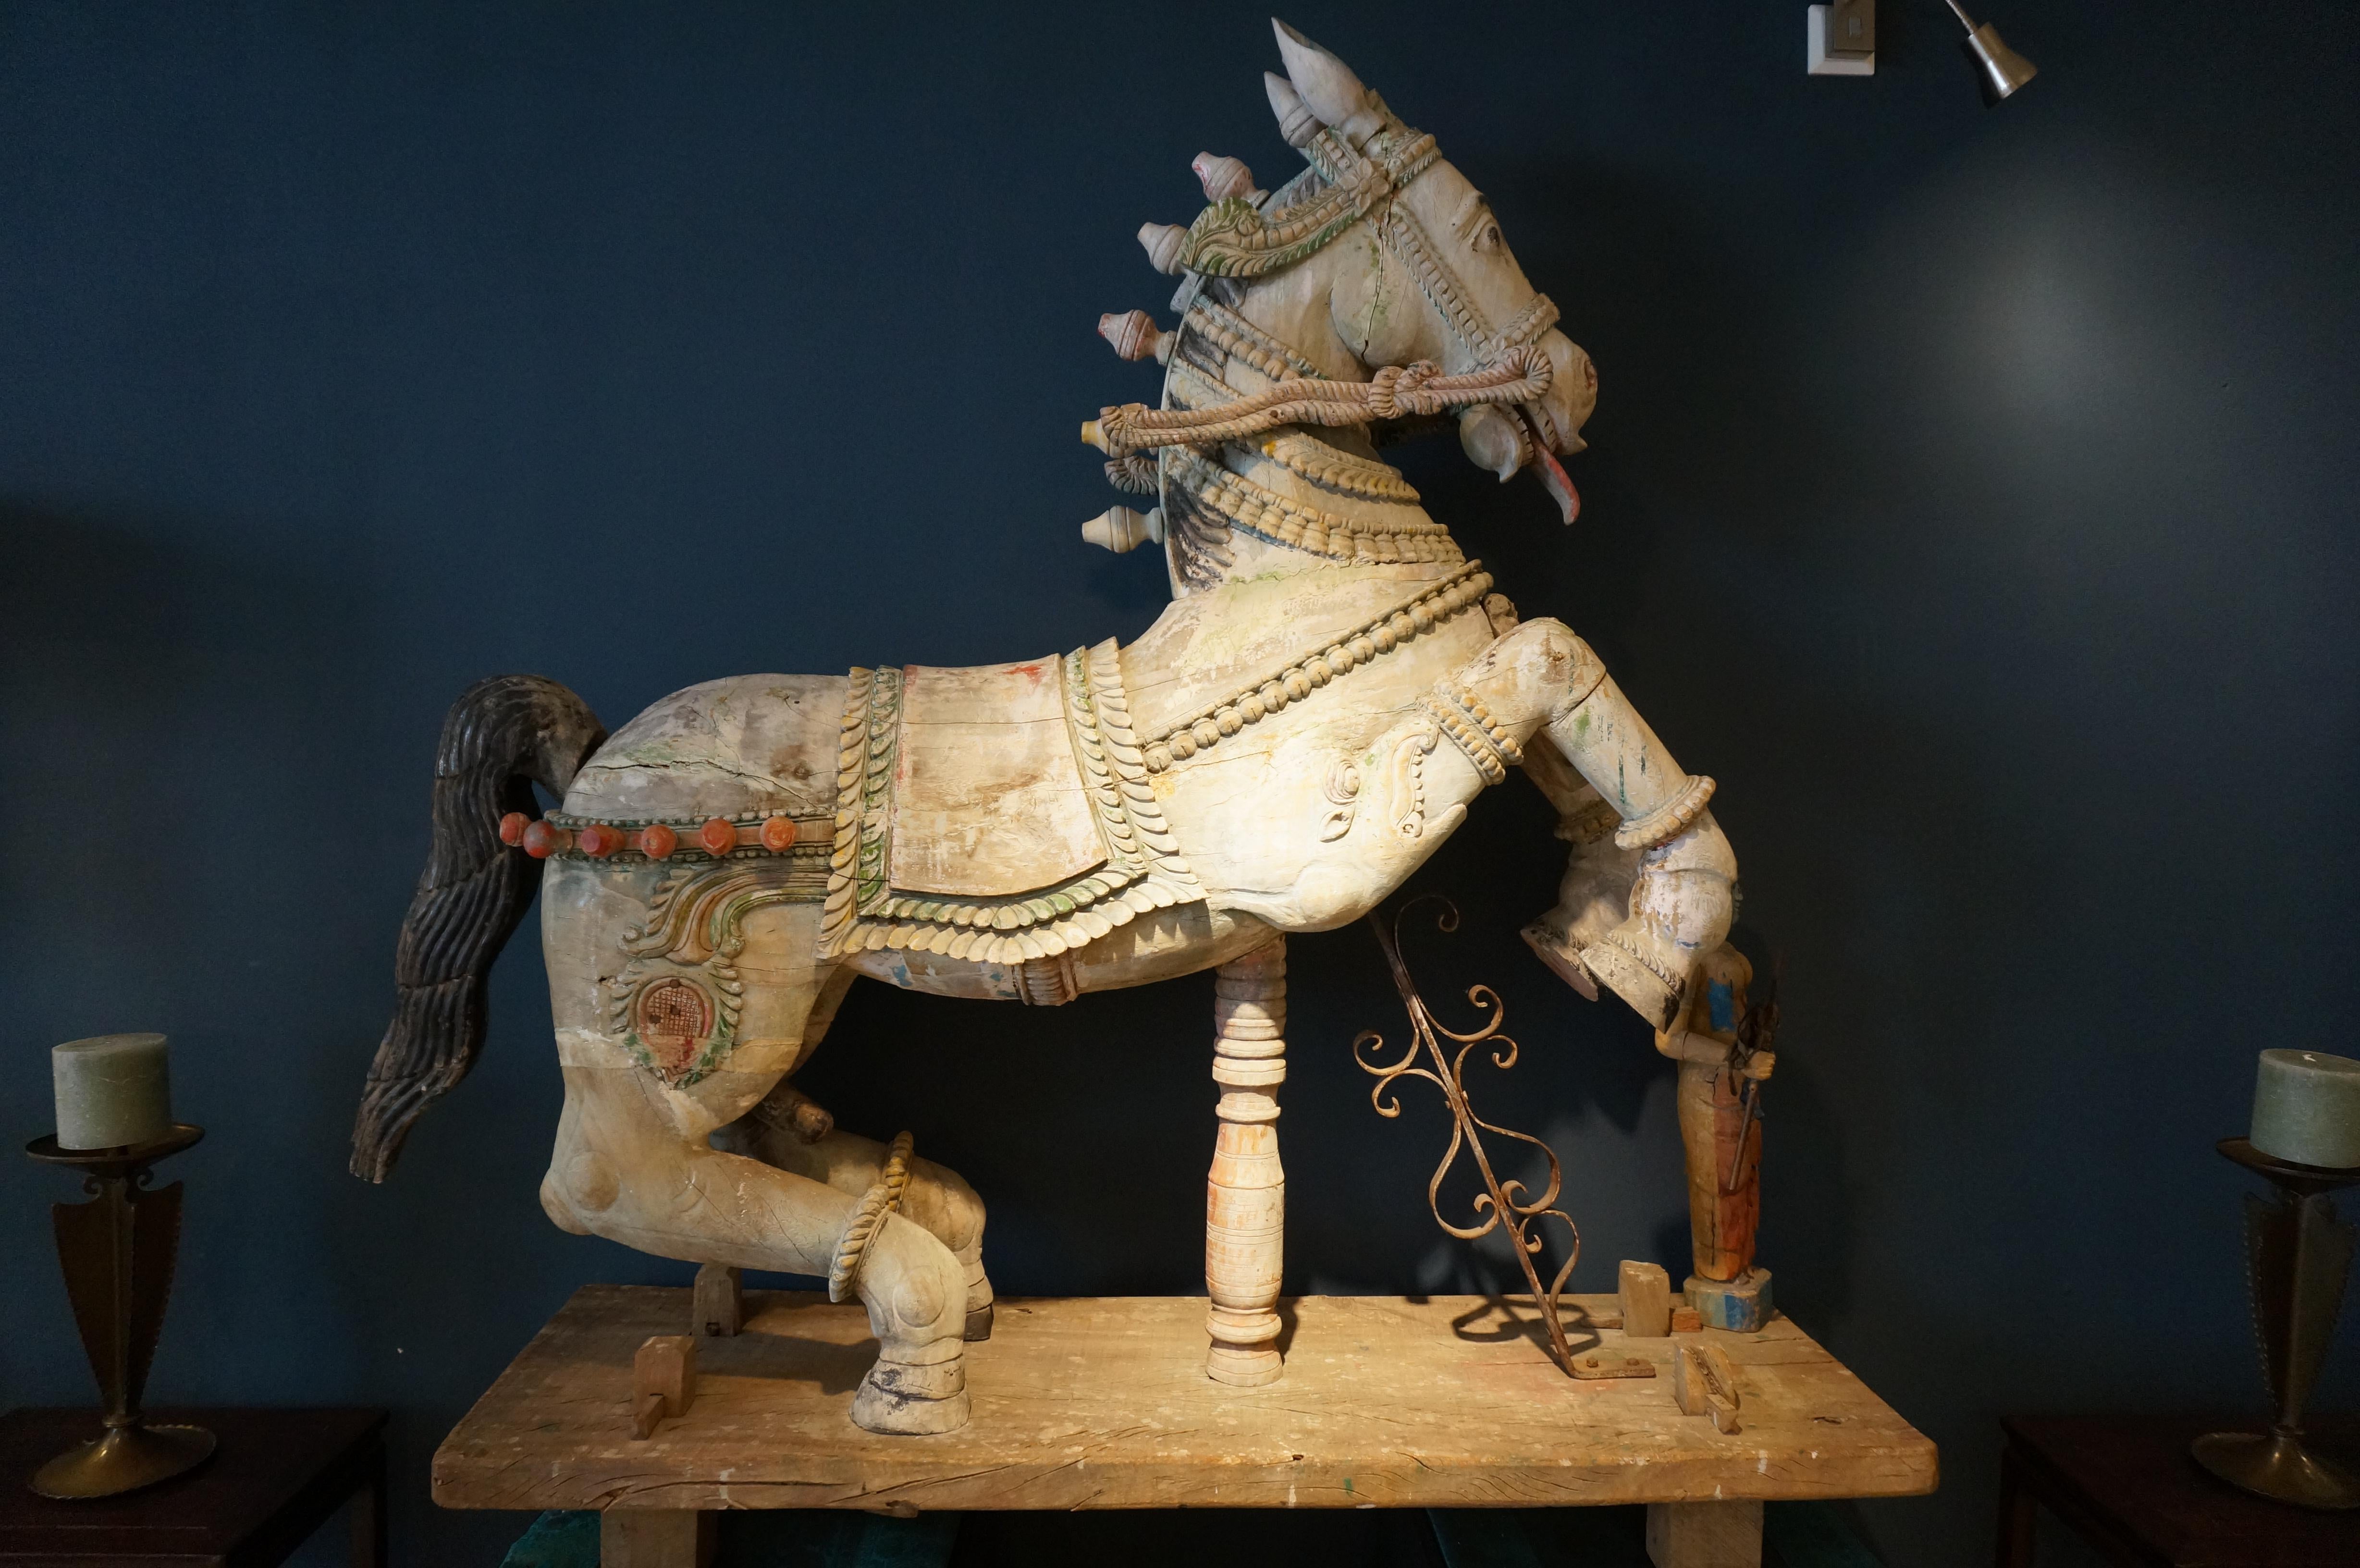 Grande sculpture décorative indienne hindoue en bois représentant un cheval avec un accompagnateur (peut-être Shiva), utilisée pour les processions.

Sculpture sur bois polychrome. En assez bon état, quelques fissures dans le bois et une